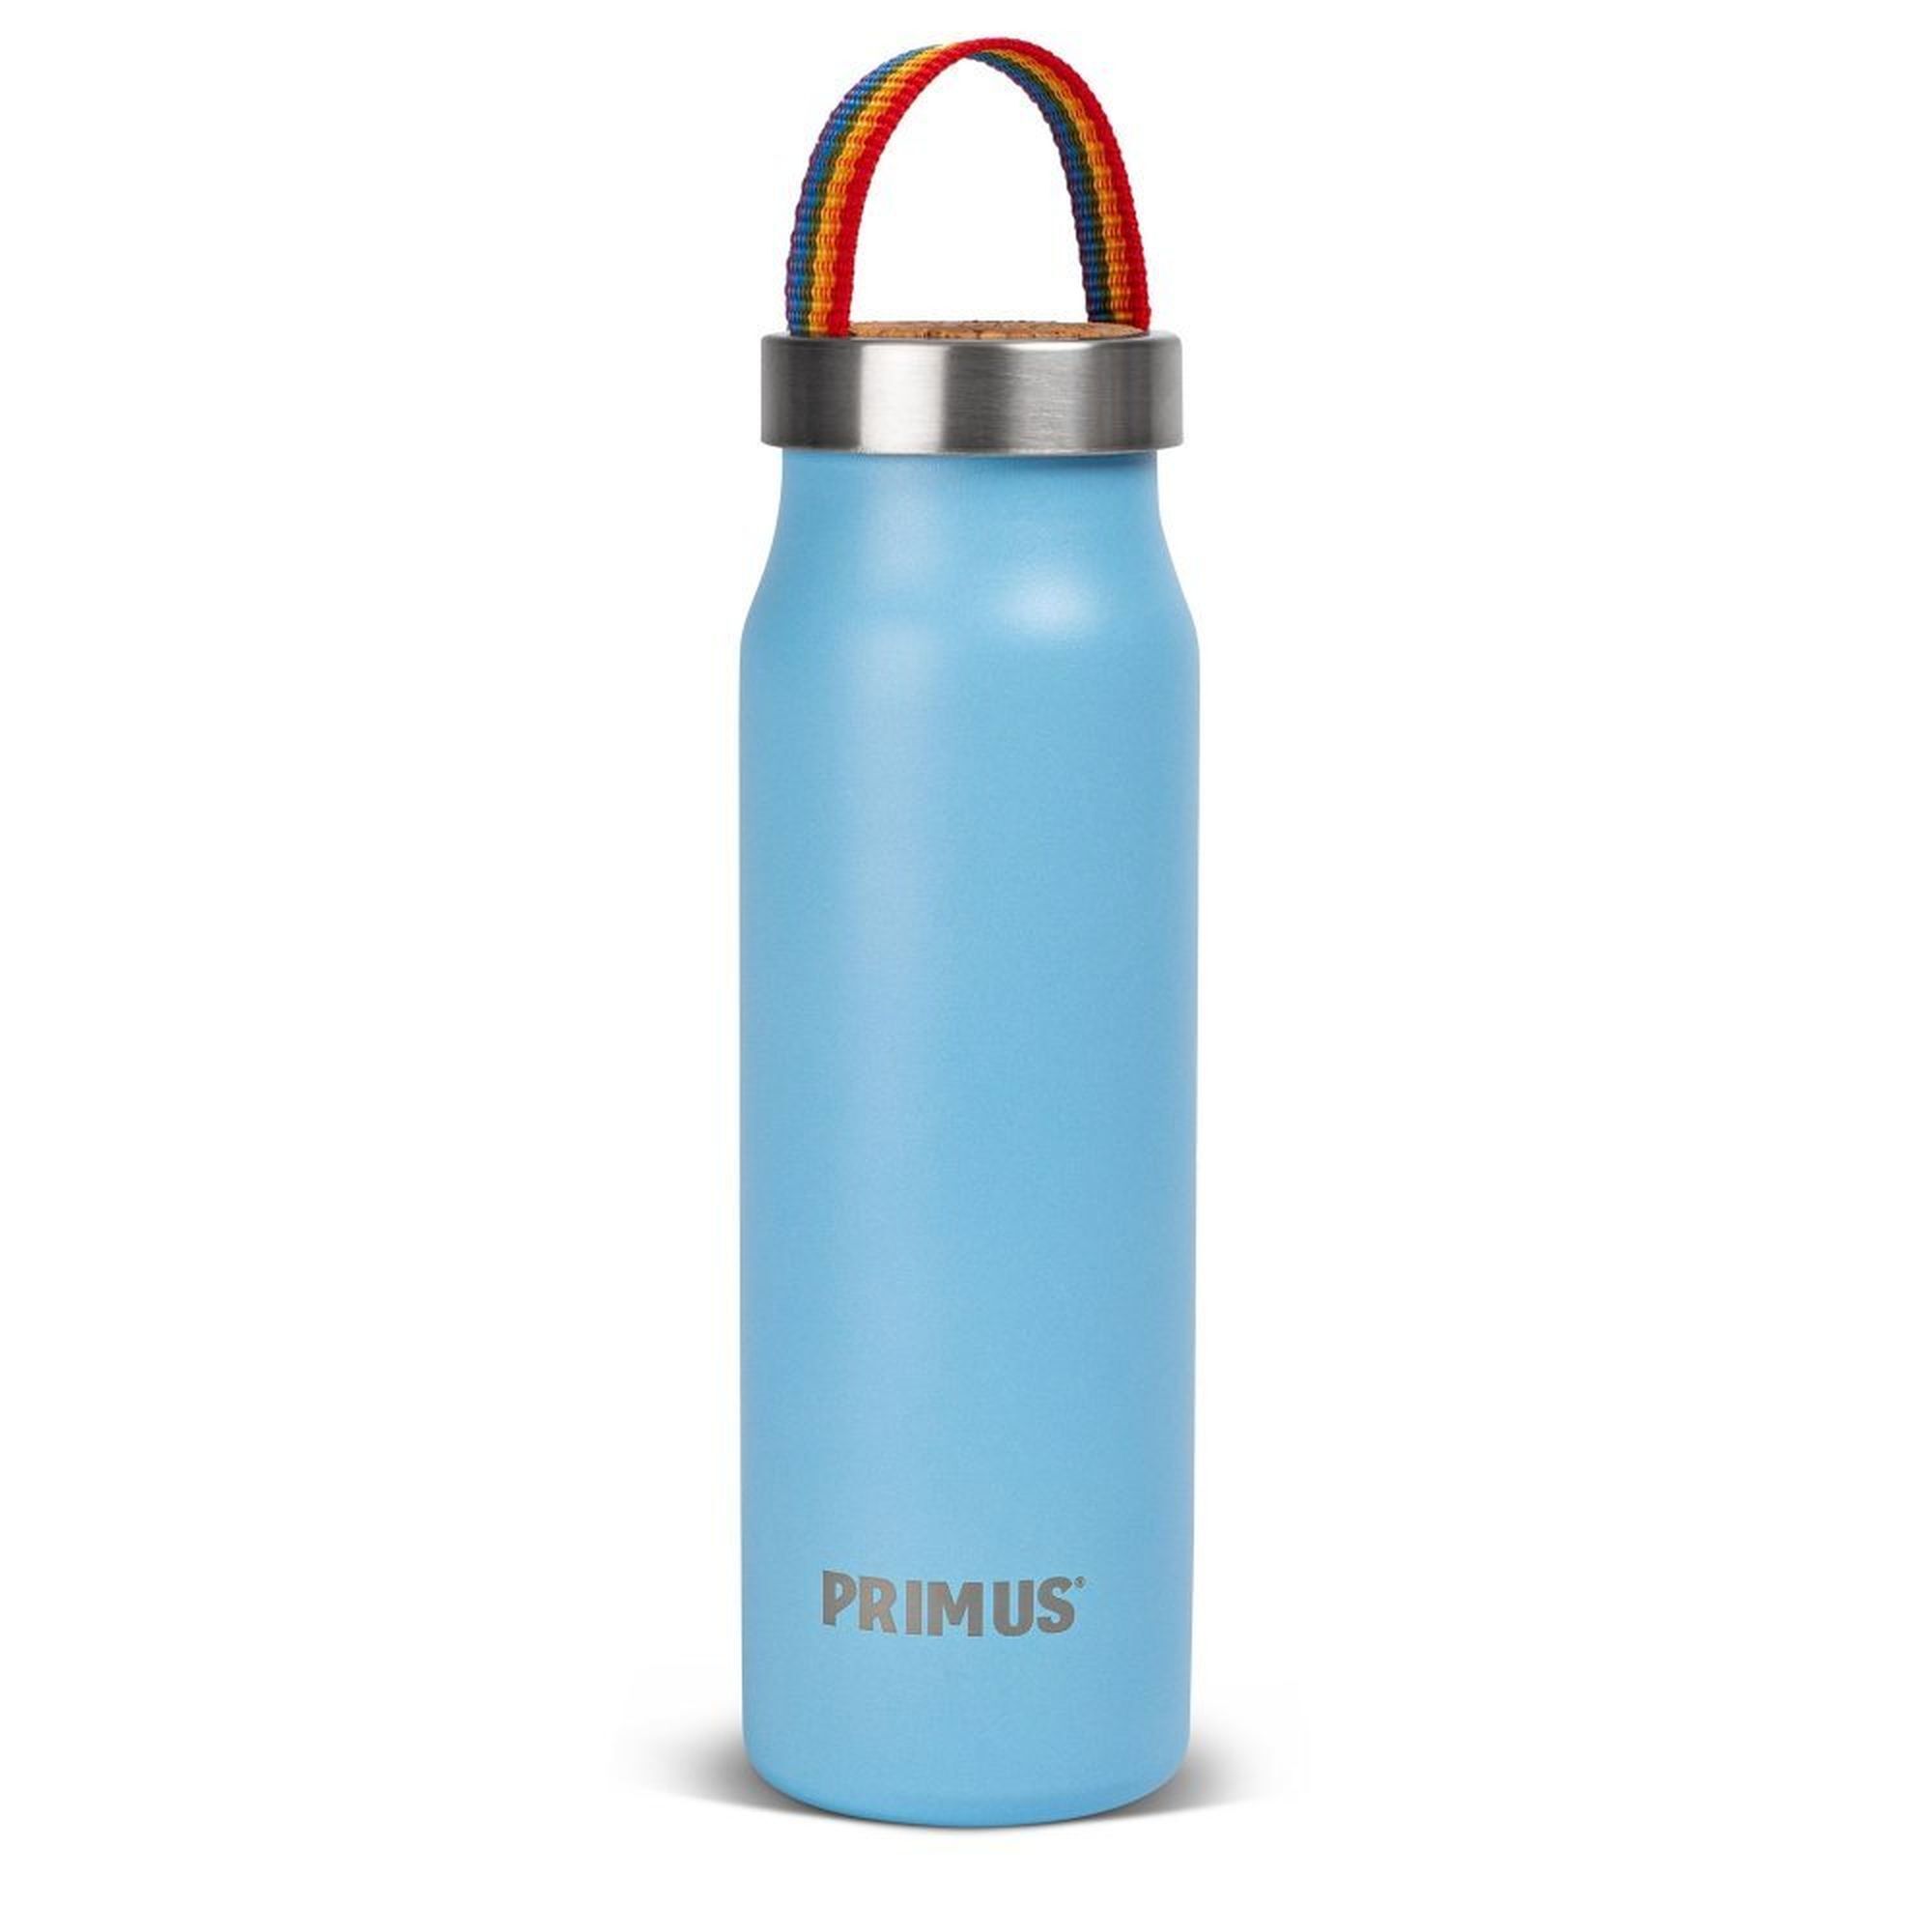 Primus Klunken Vacuum Bottle 0.5L - Vacuum flask